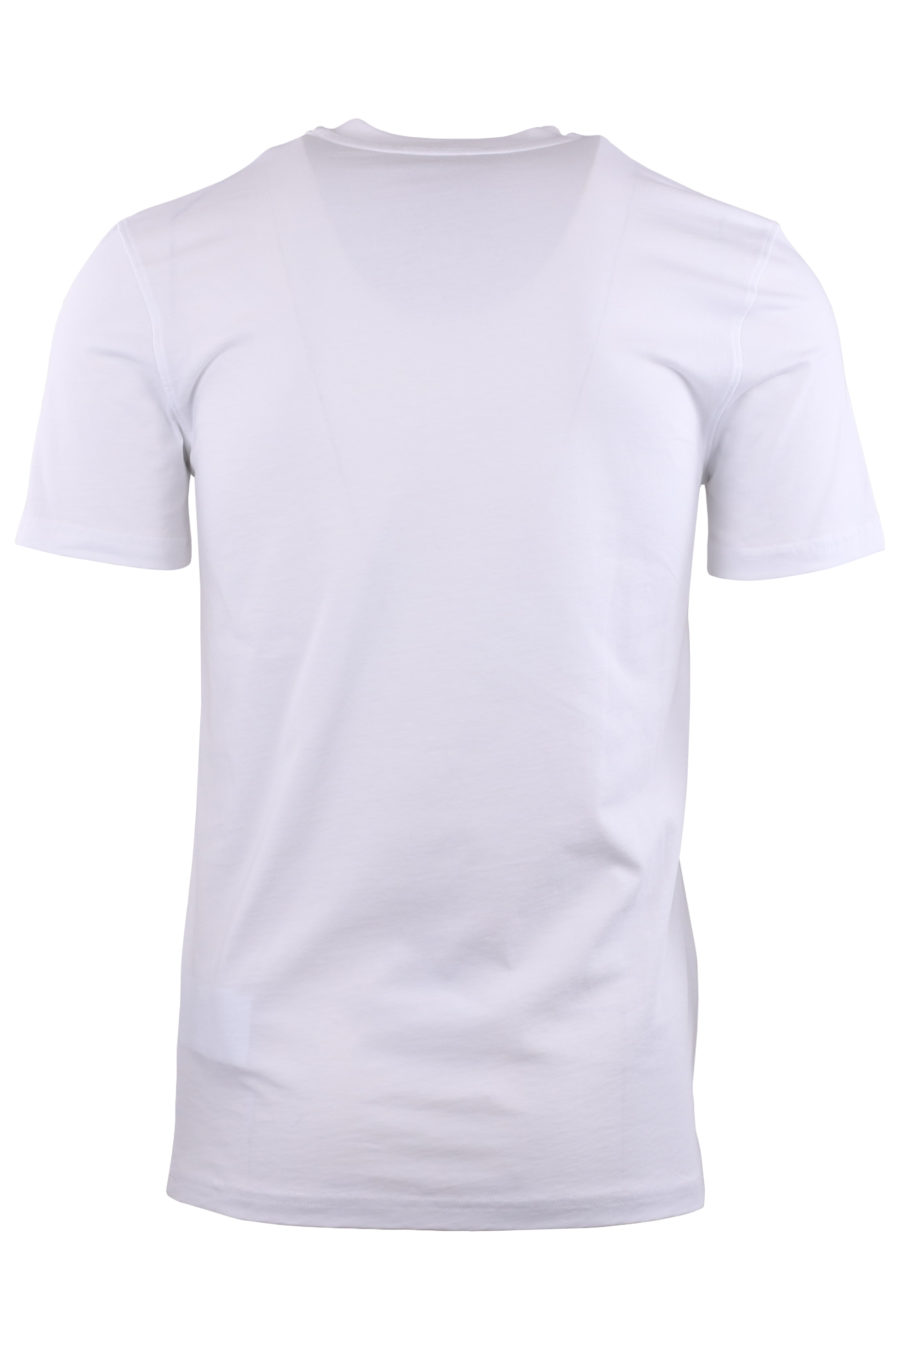 Camiseta blanca con logo en goma dorado - fcd1c6444ba1b9da091d8b719a551232f3497cd3